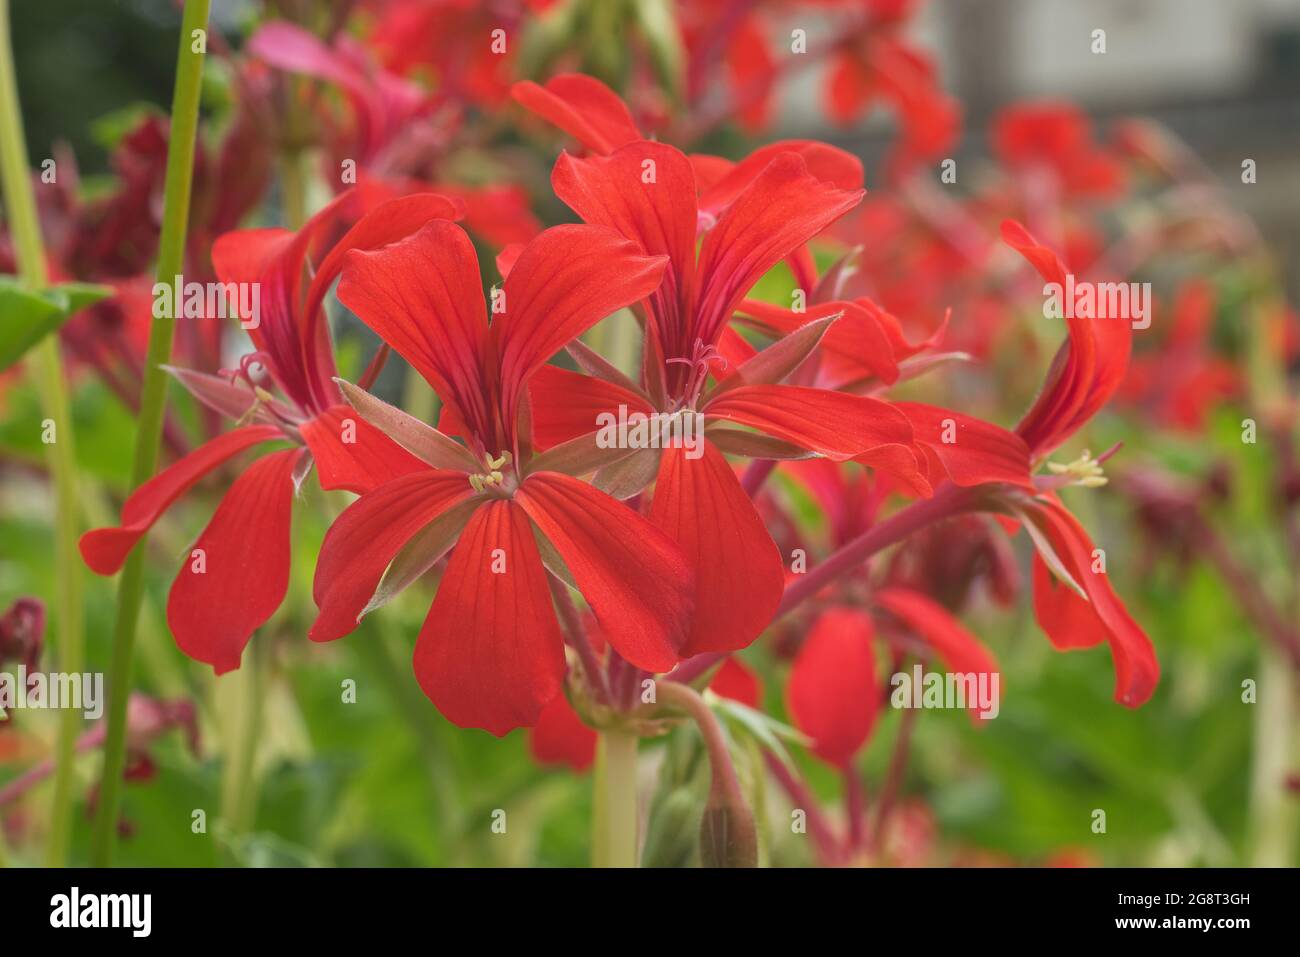 Géranium à l'ivée rouge en fleurs Pelargonium peltatum dans un jardin. Également connu sous le nom de pélargonium à feuilles de lierre ou géranium en cascade. Banque D'Images